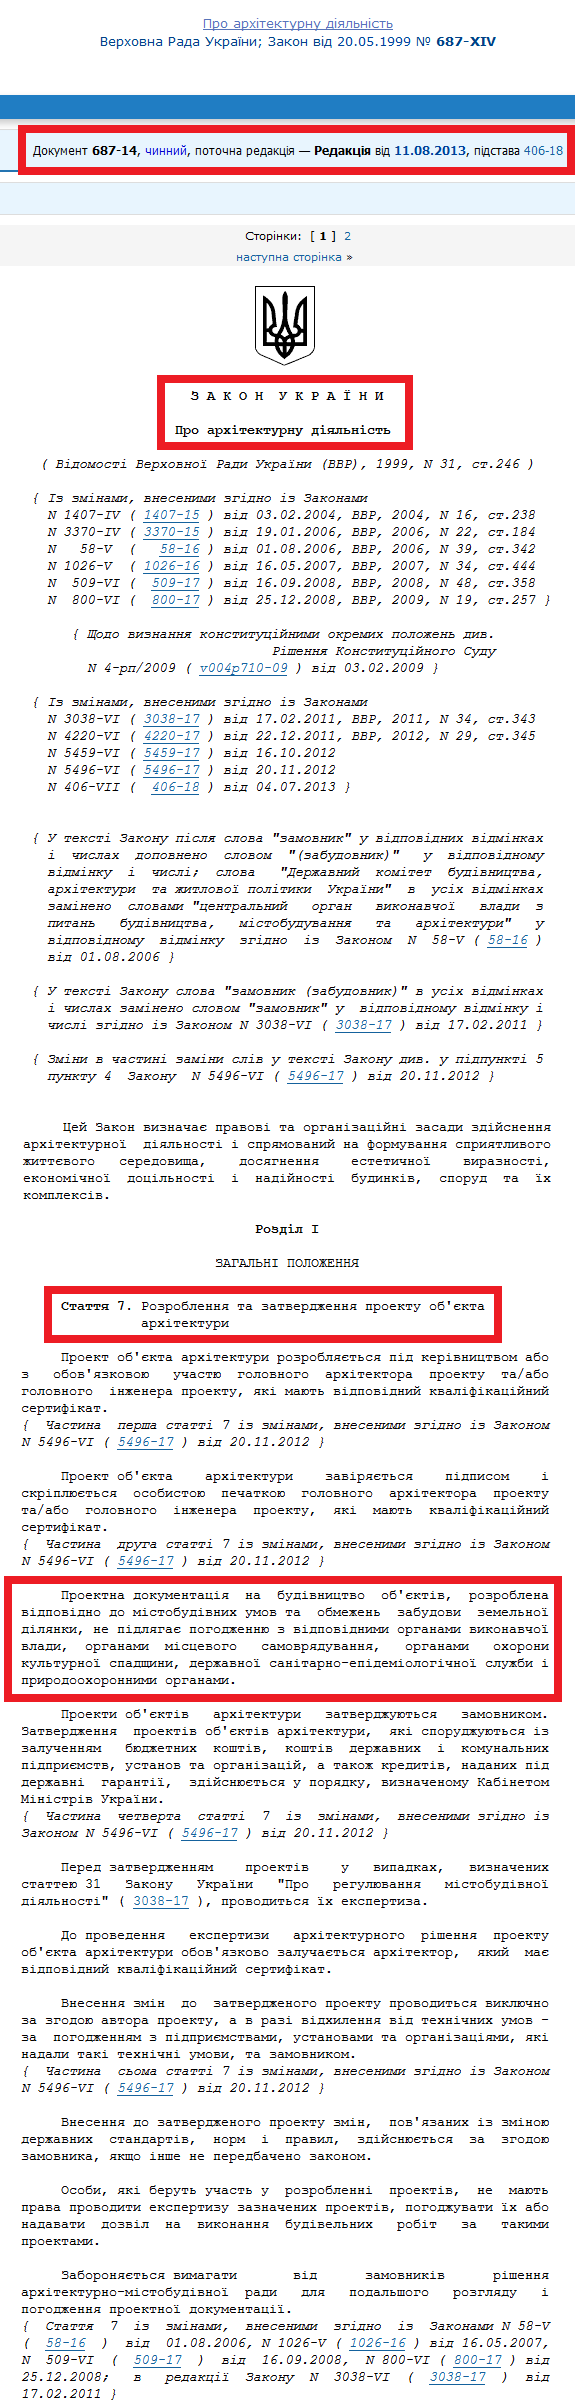 http://zakon0.rada.gov.ua/laws/show/687-14